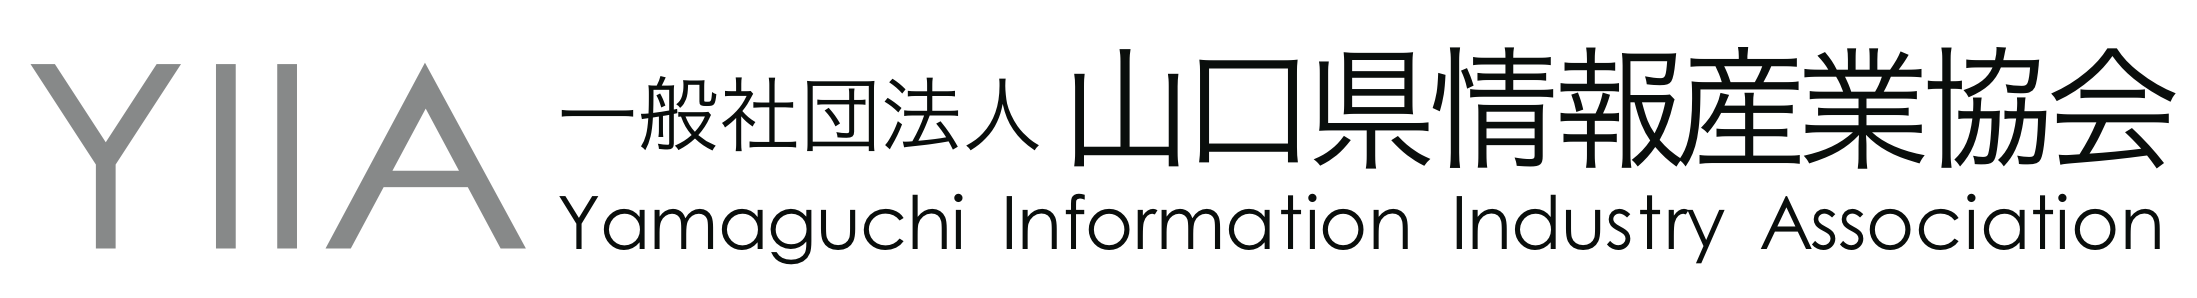 山口県情報産業協会